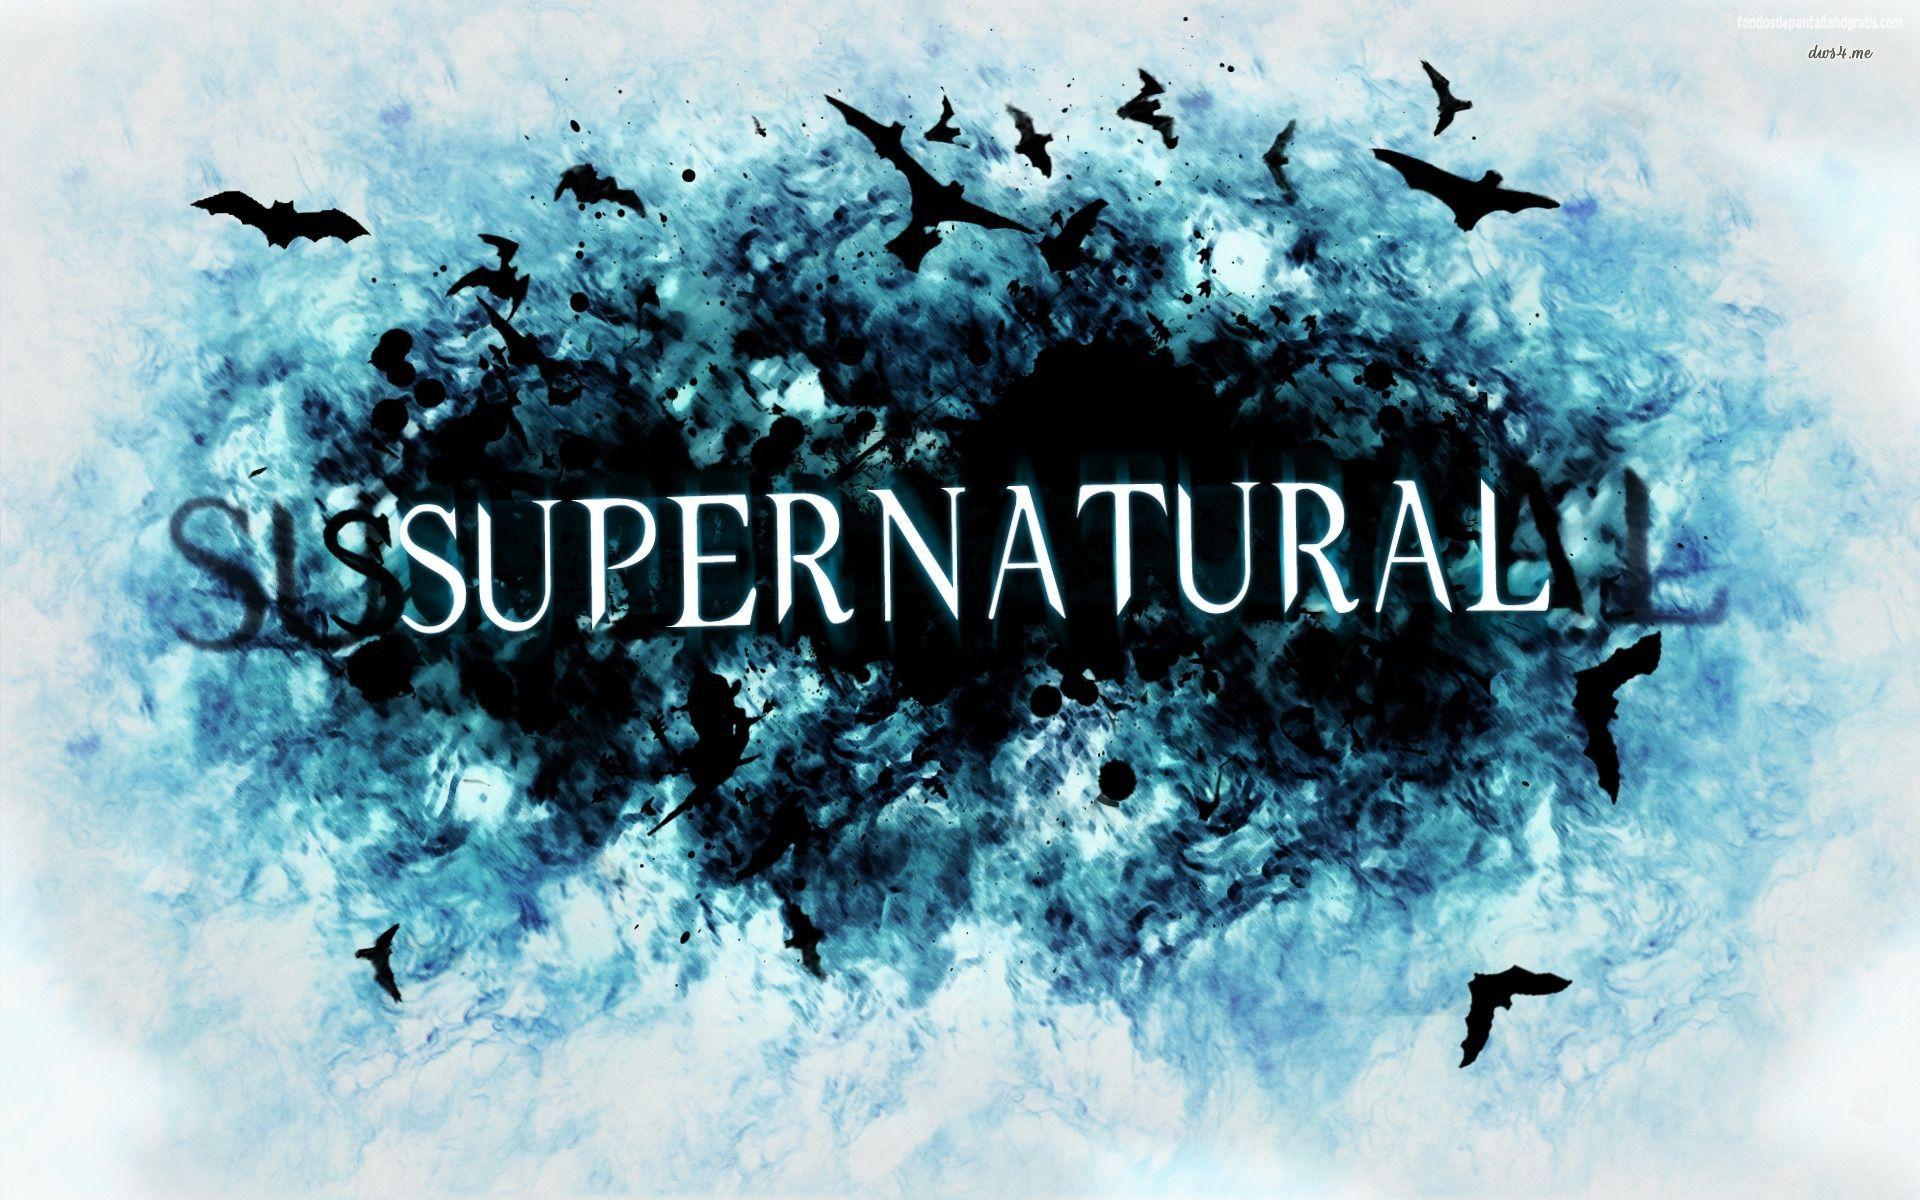 Supernatural Wallpaper. Supernatural wallpaper, Supernatural background, Supernatural picture